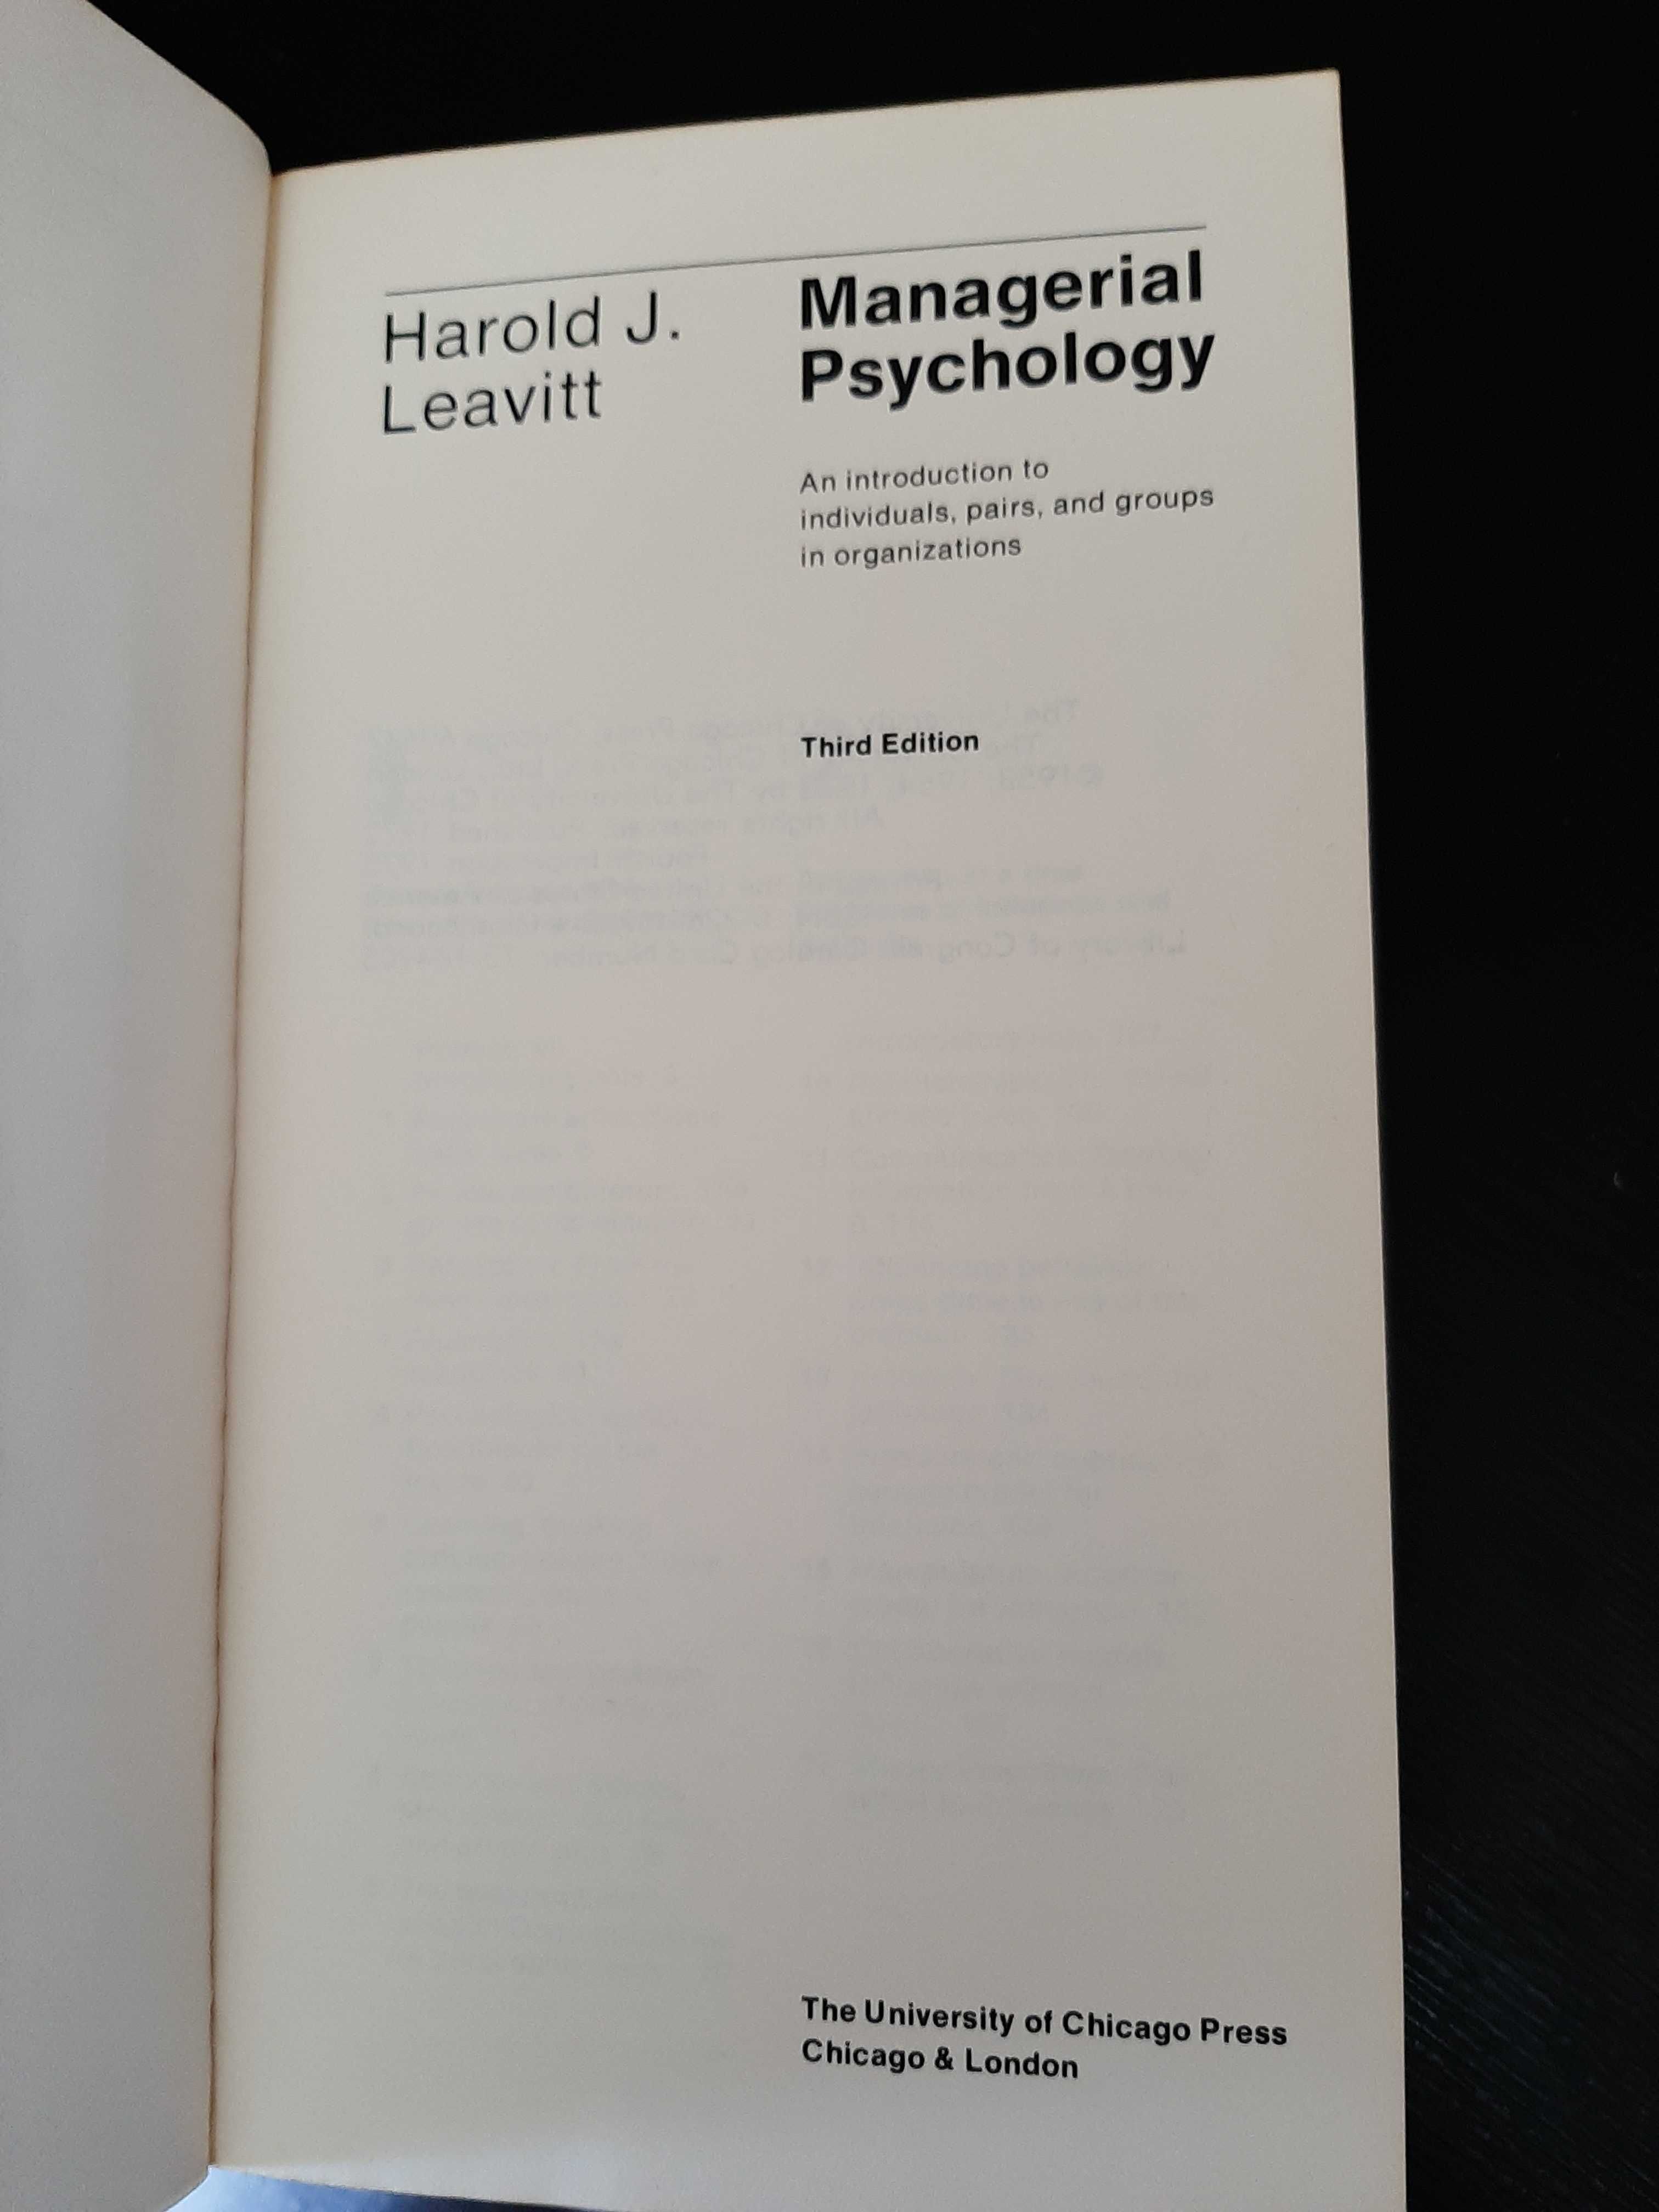 Harold J. Leavitt – Managerial Psychology